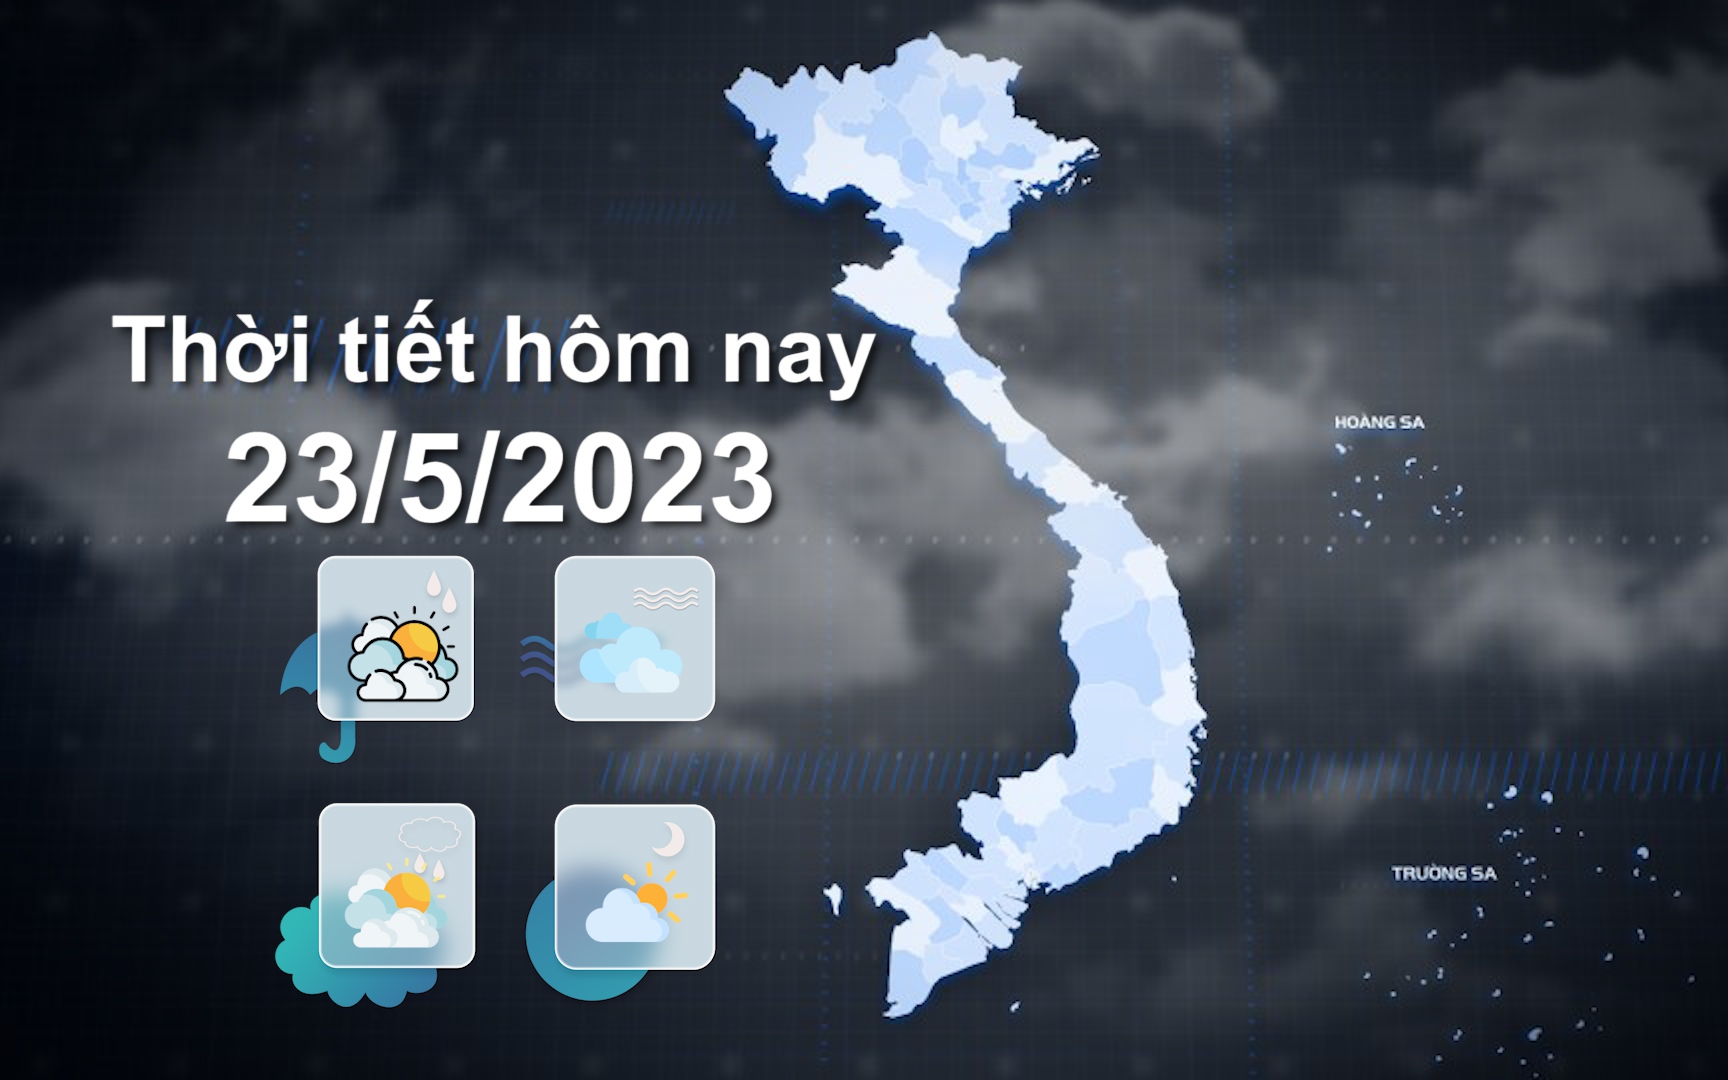 Thời tiết hôm nay 23/5/2023: Hà Nội có mưa rào và dông